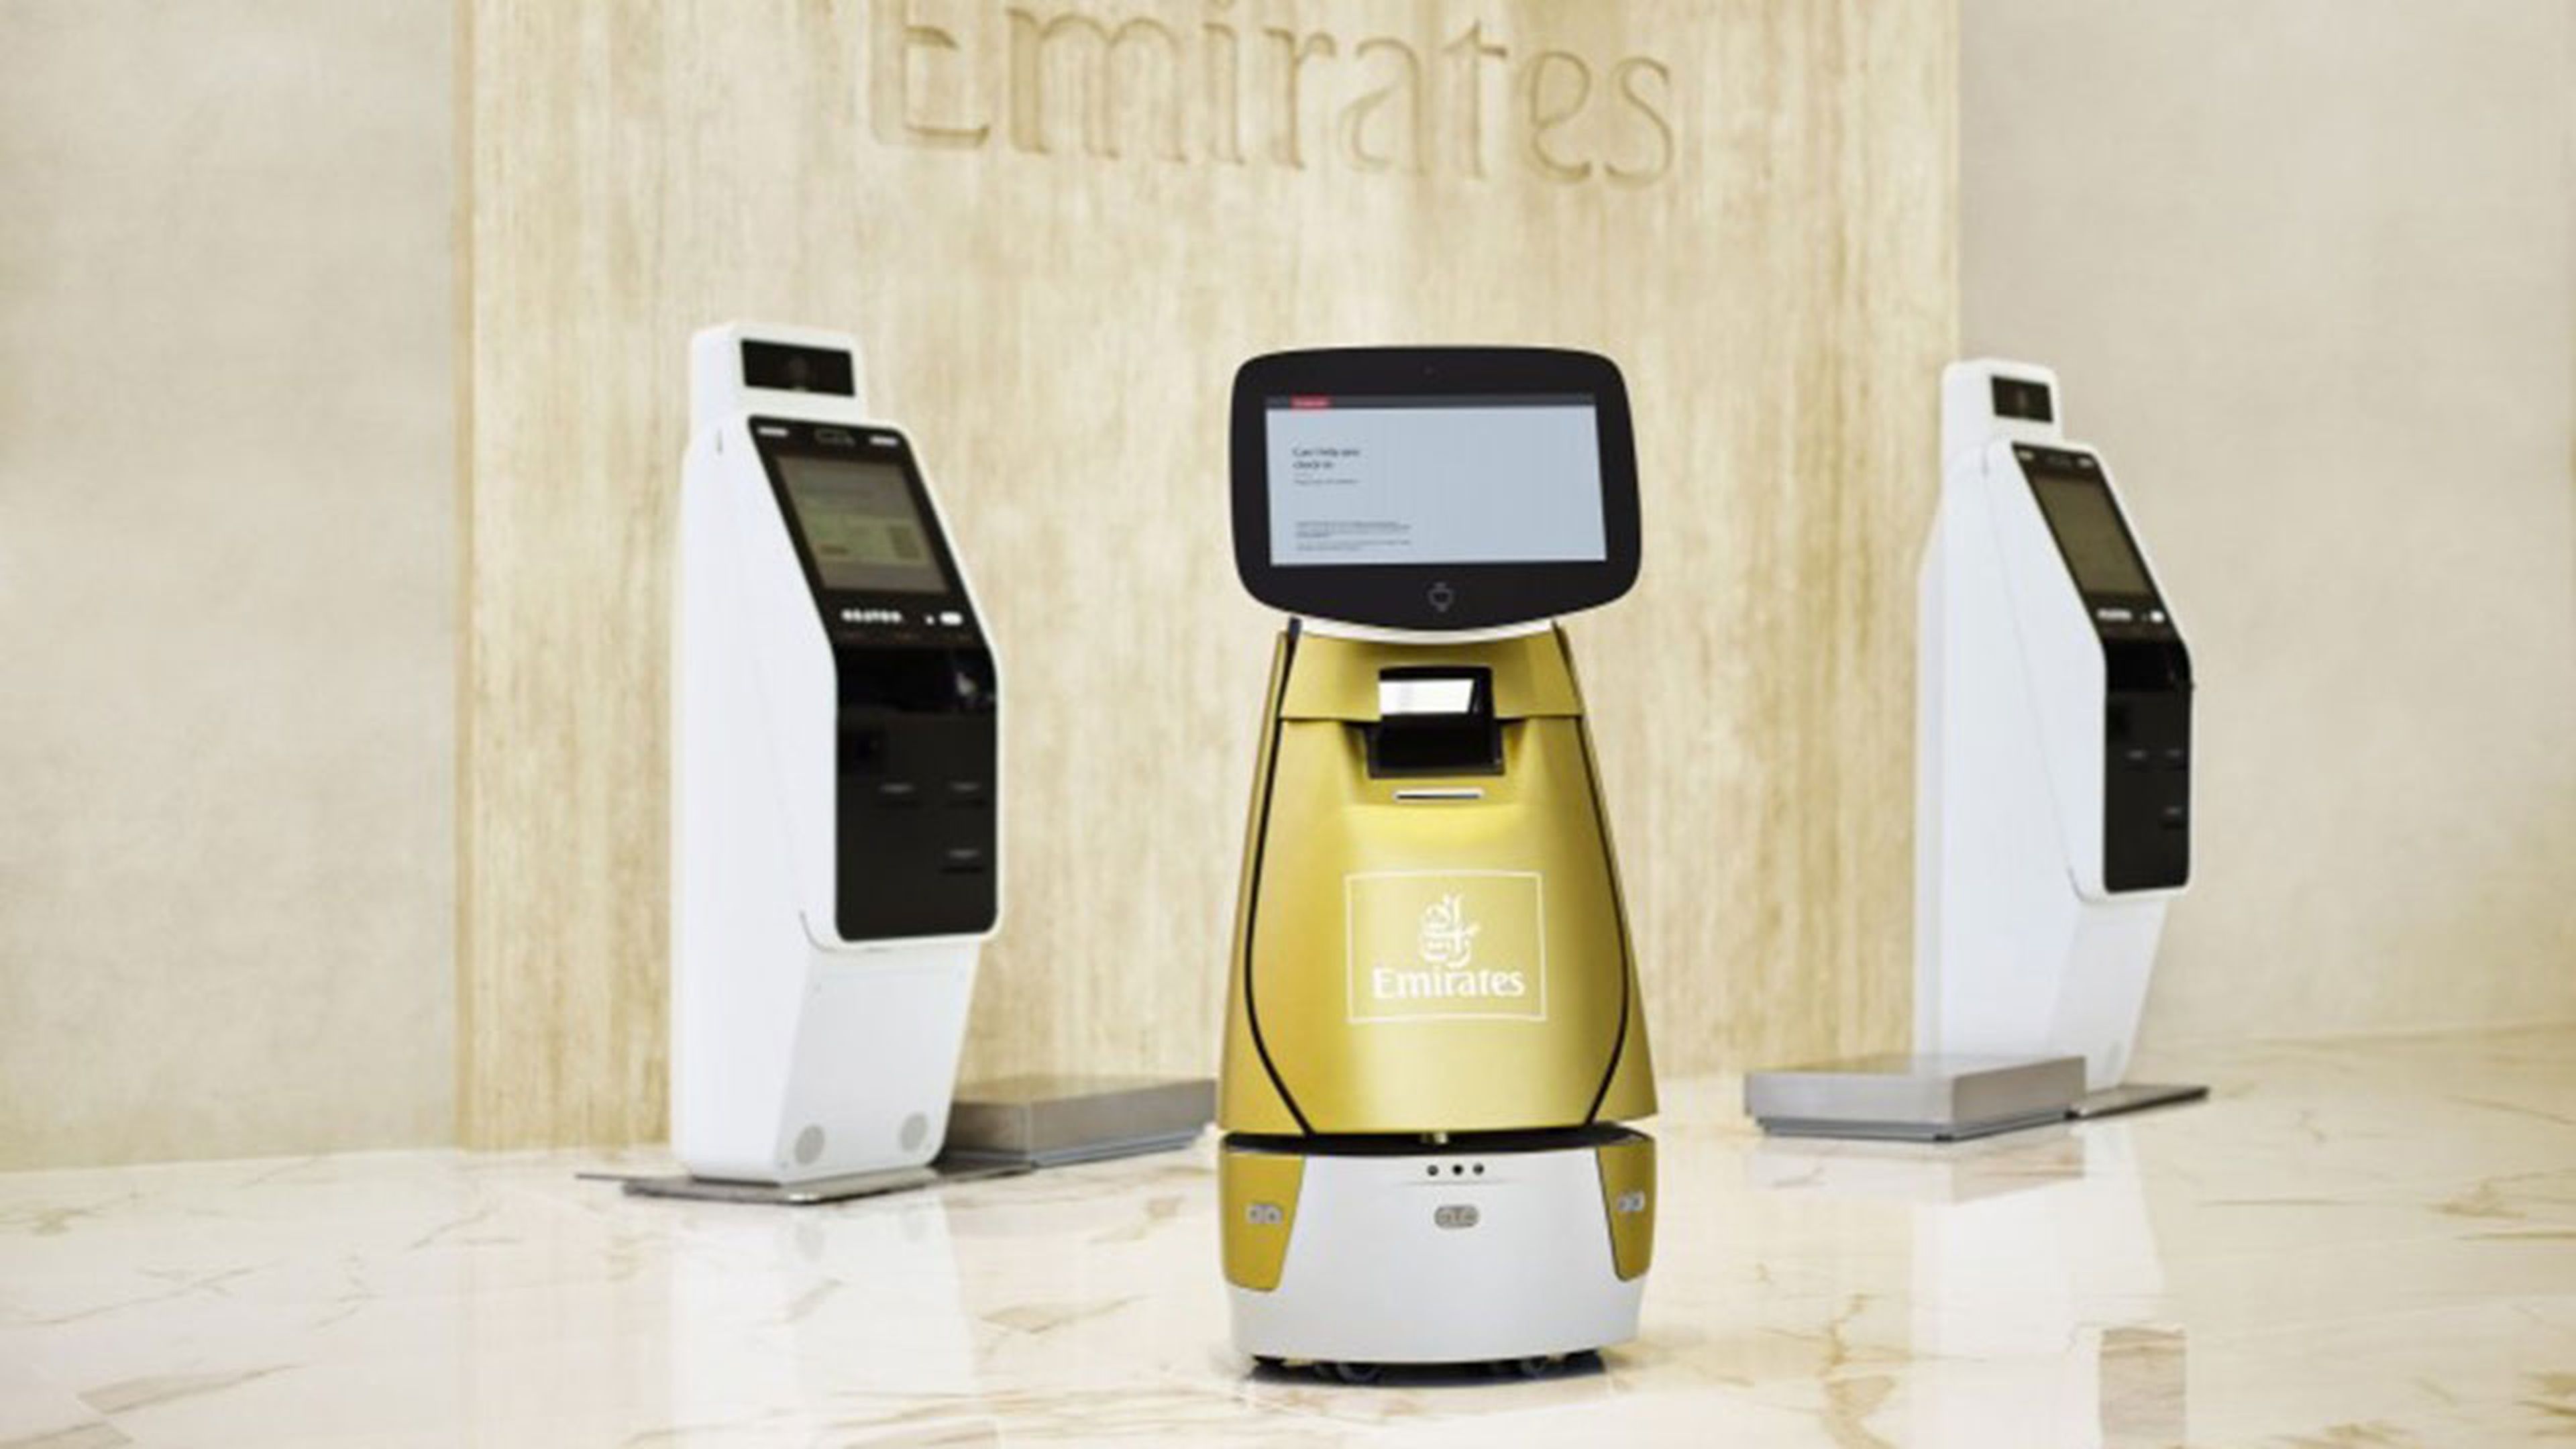 La aerolínea Emirates lanza este robot que va a ayudarte